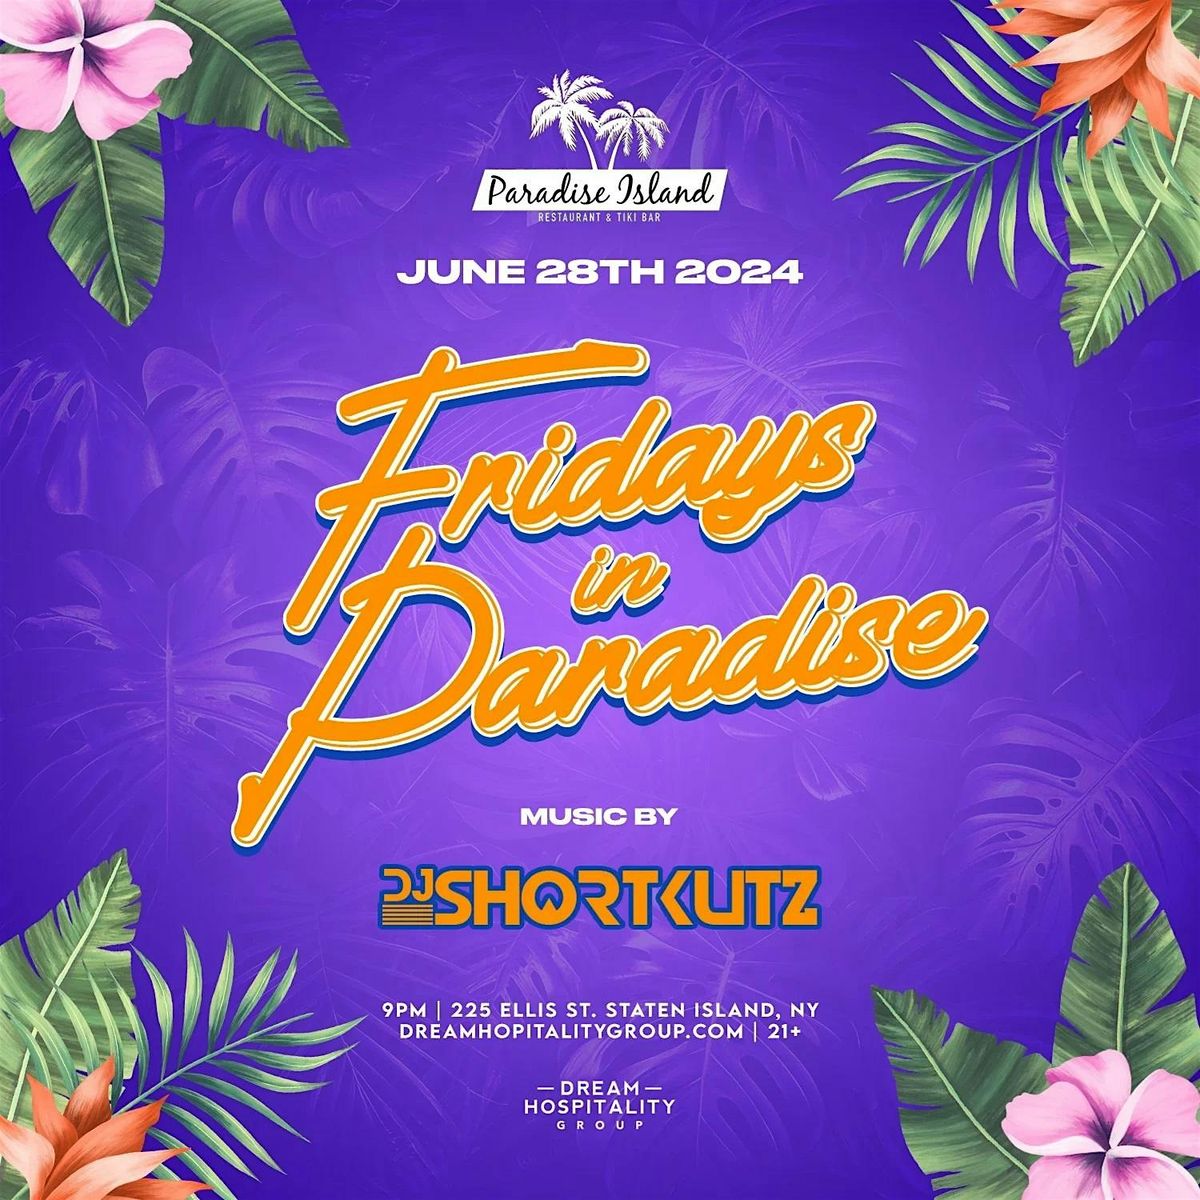 DJ Shortkutz @ Paradise Island NY June 28th